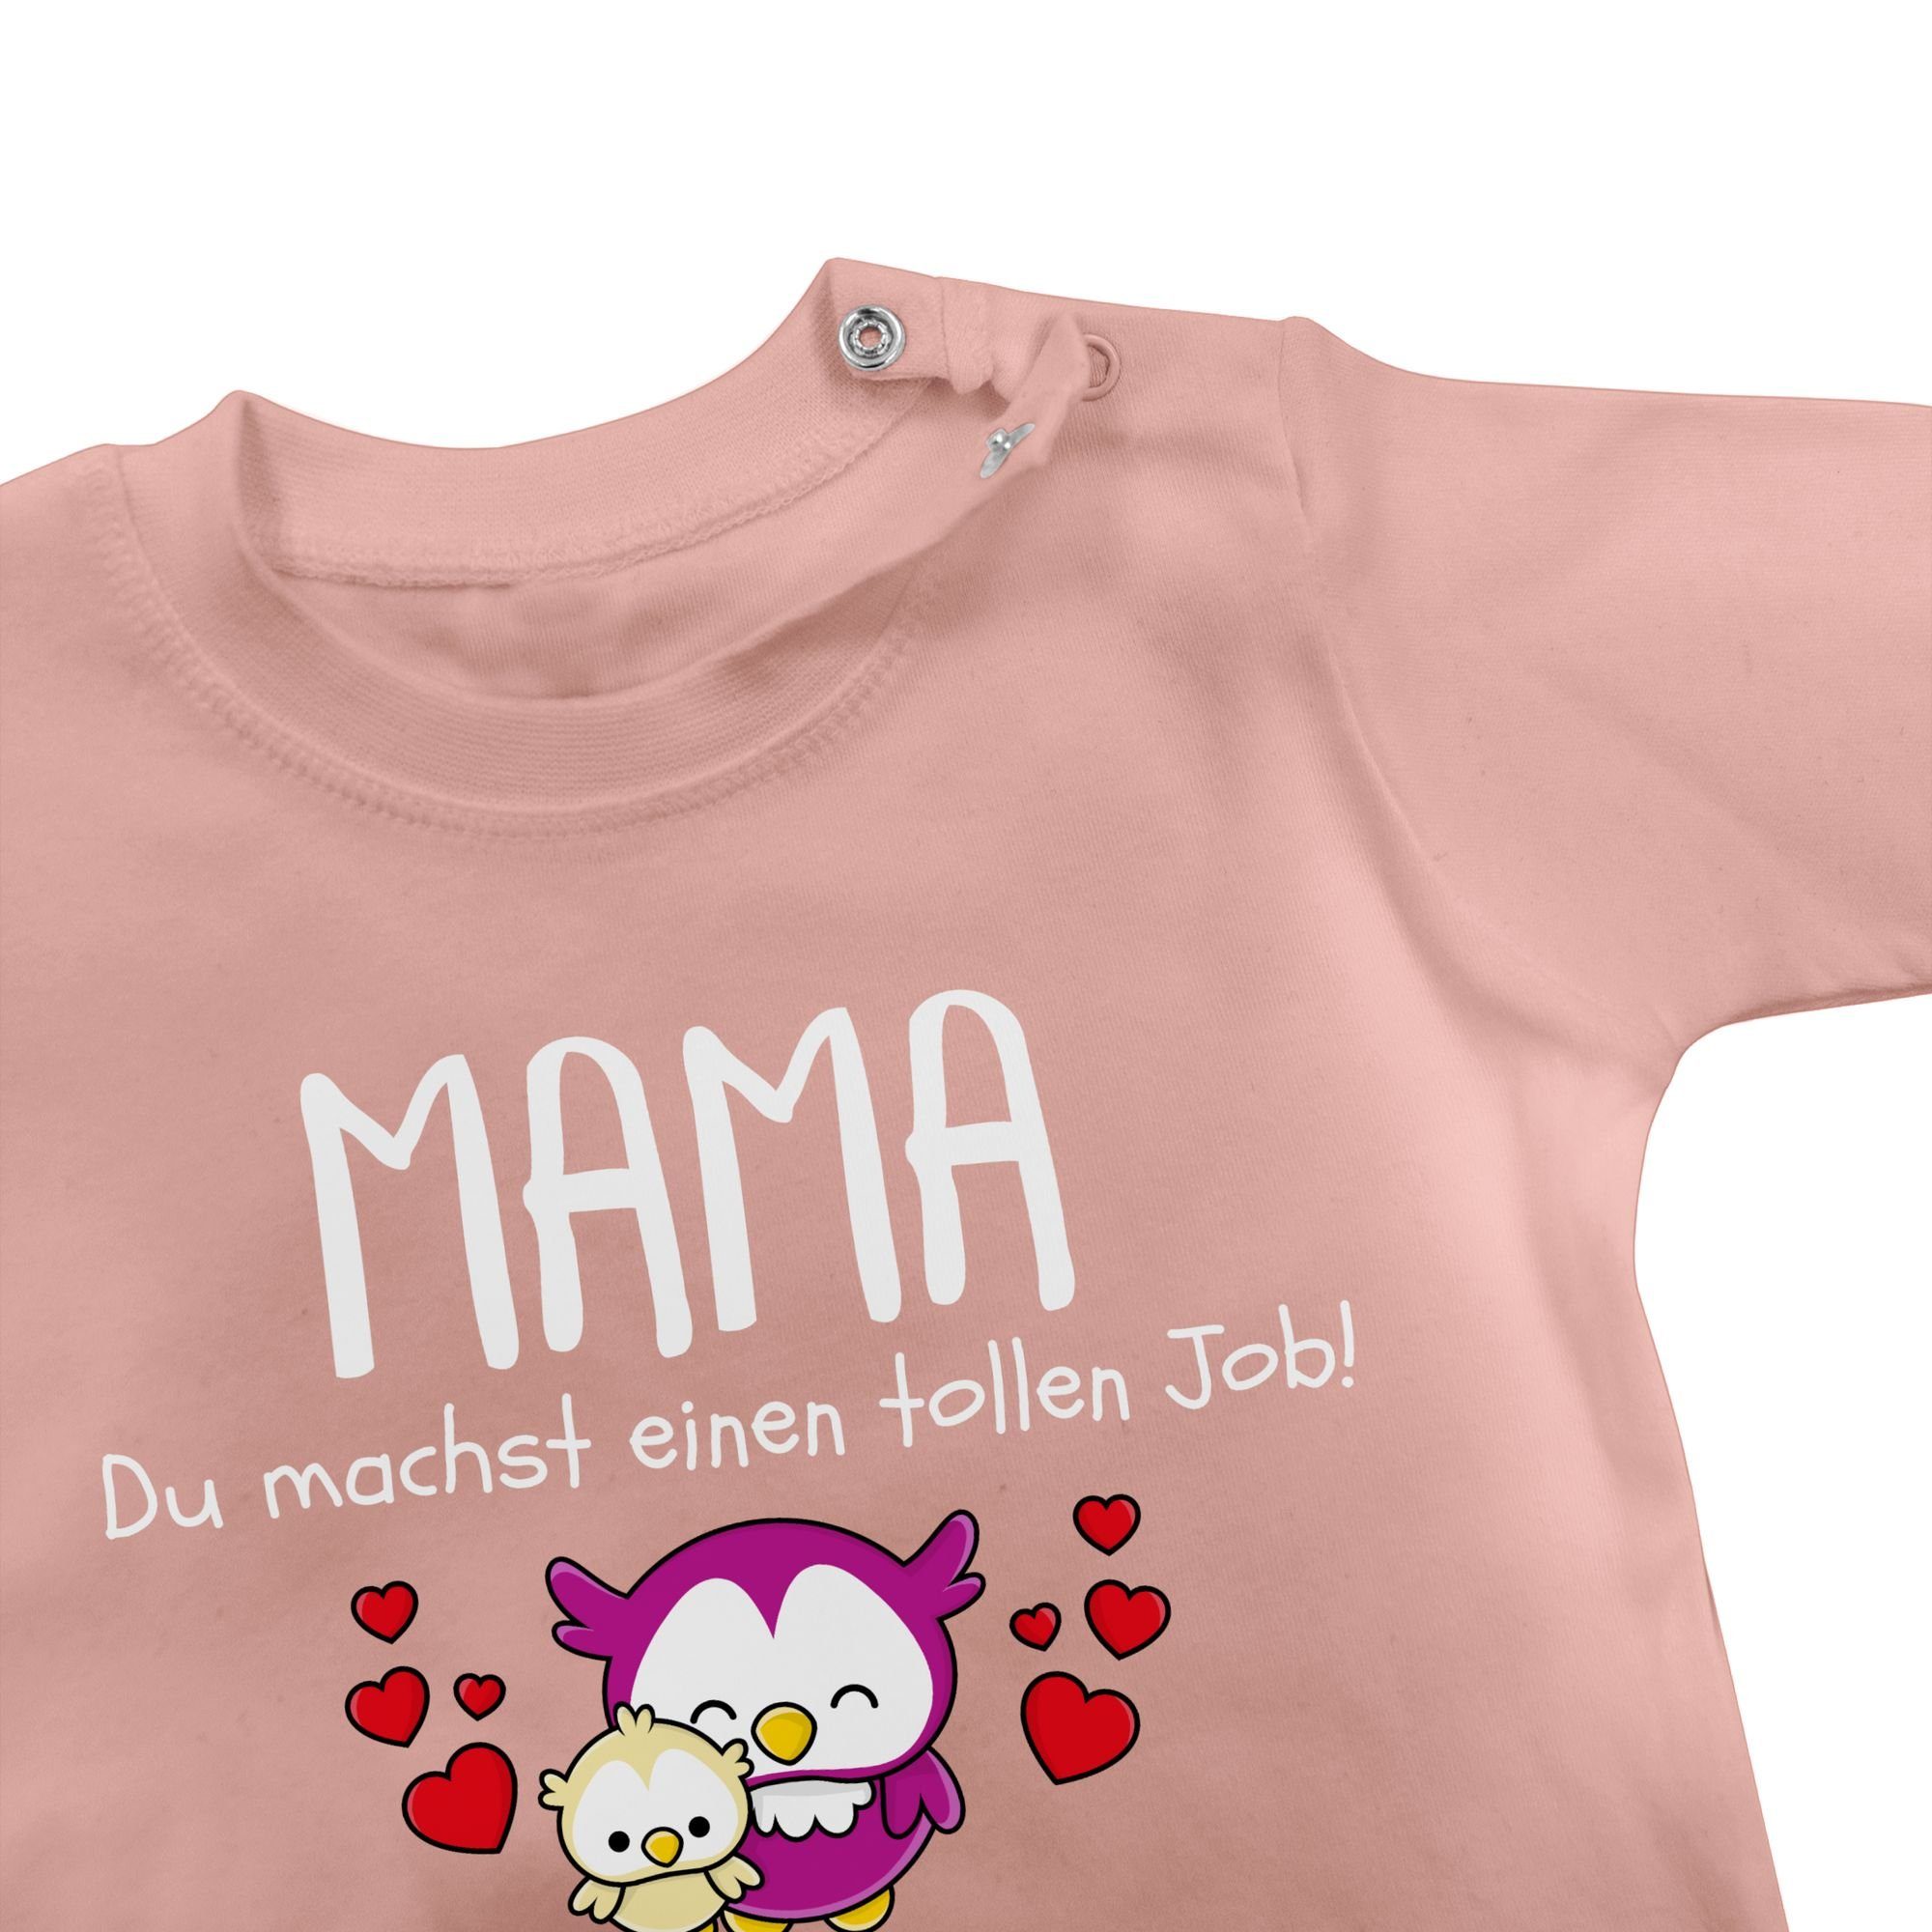 T-Shirt machst Babyrosa tollen Muttertagsgeschenk Job einen Muttertag I Mama du Shirtracer 1. 1